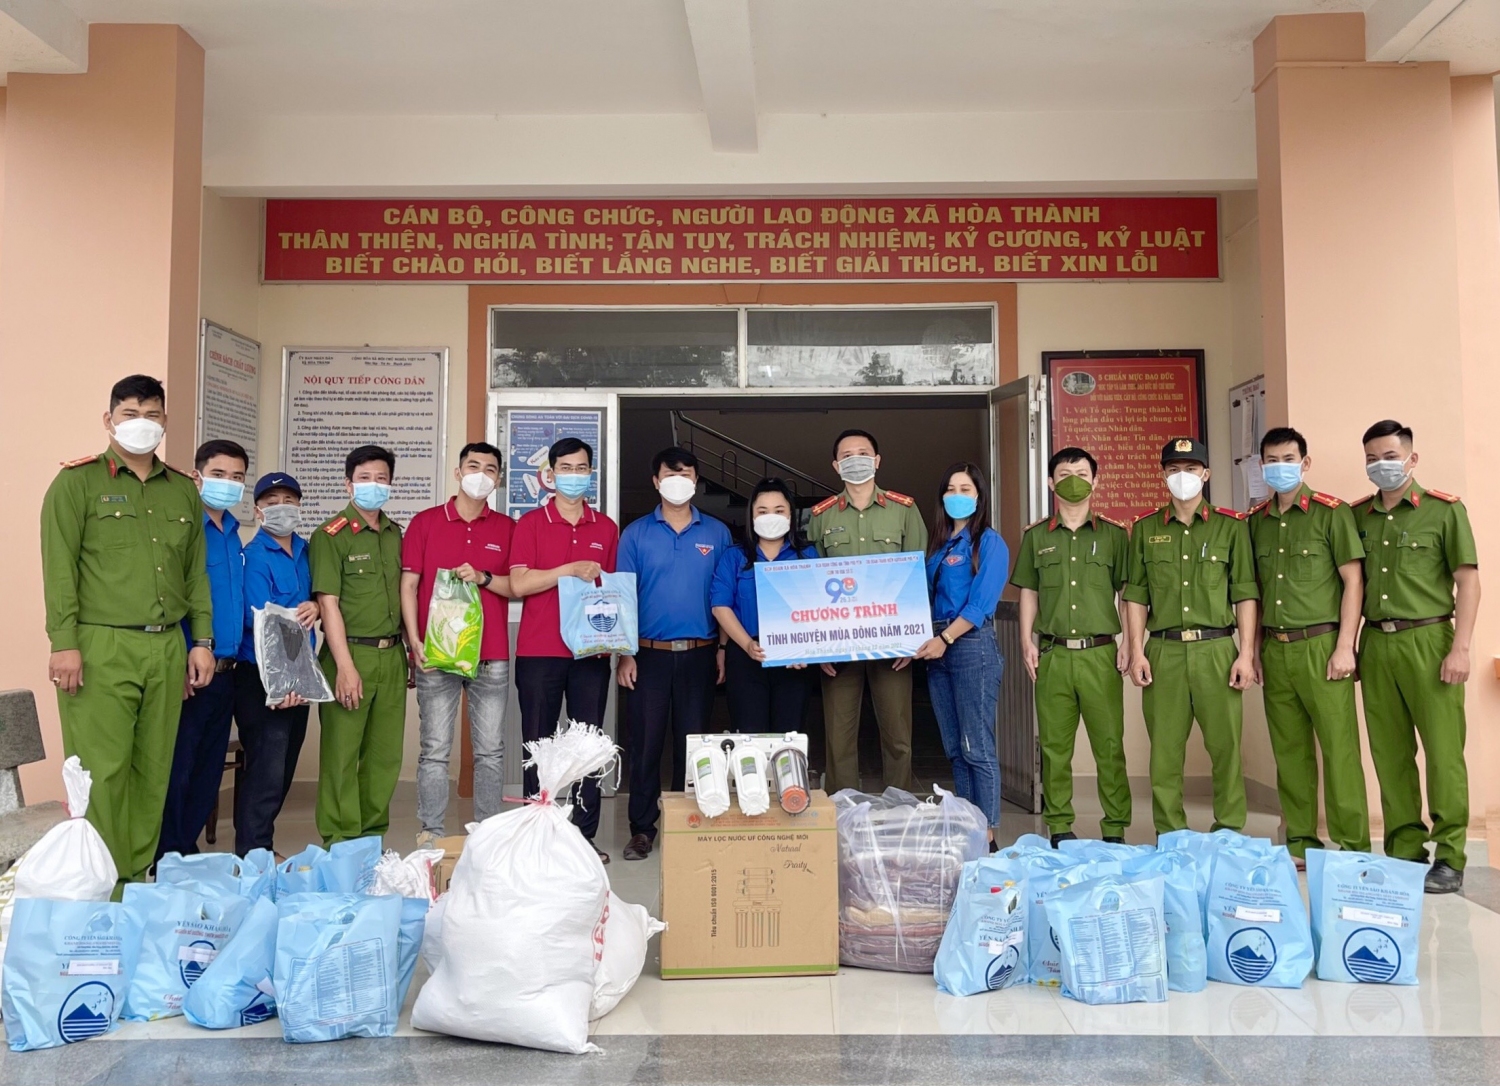 Đoàn thanh niên Công an tỉnh tổ chức chương trình “Tình nguyện mùa đông” và trao quà cho người dân xã Hòa Thành, thị xã Đông Hòa.